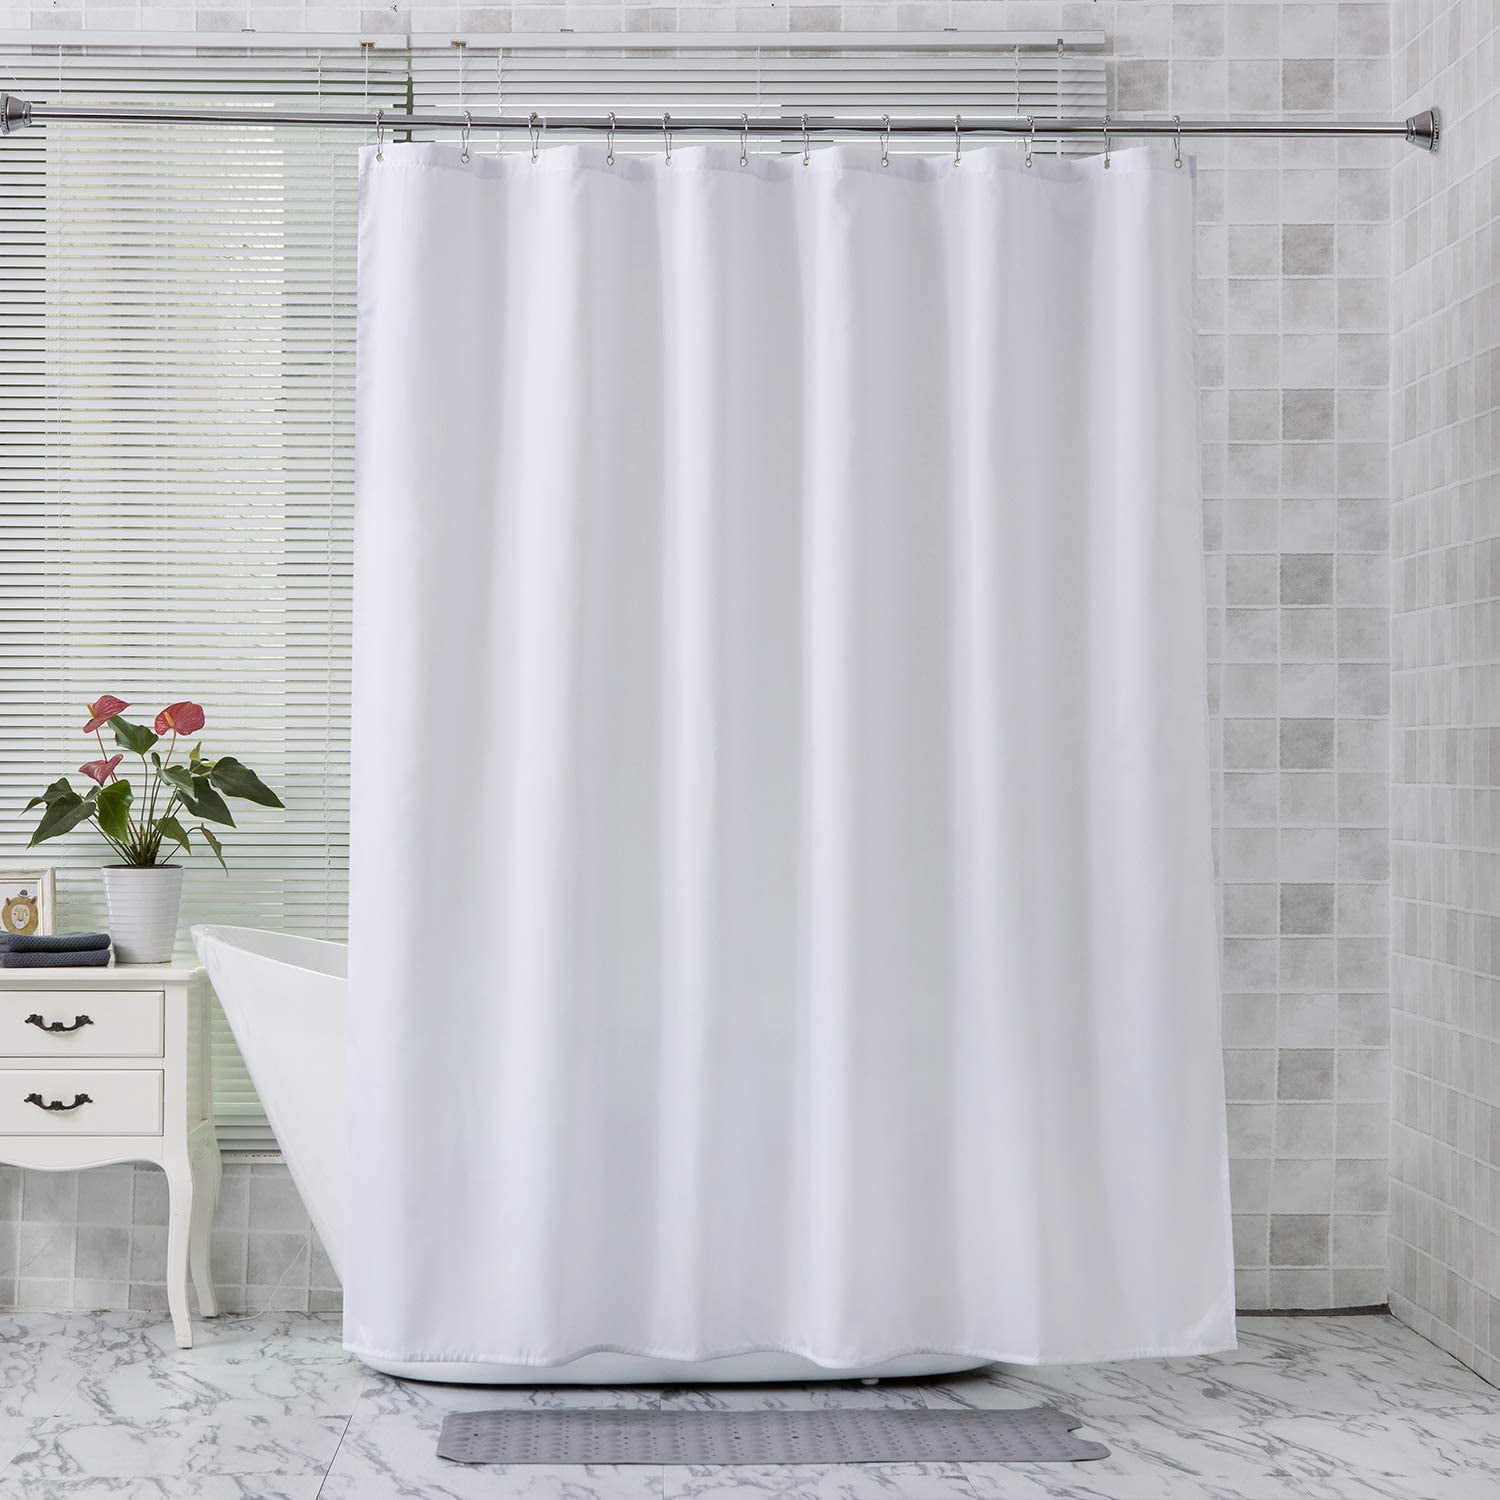 Horse Teeth Waterproof Bathroom Polyester Shower Curtain Liner Water Resistant 